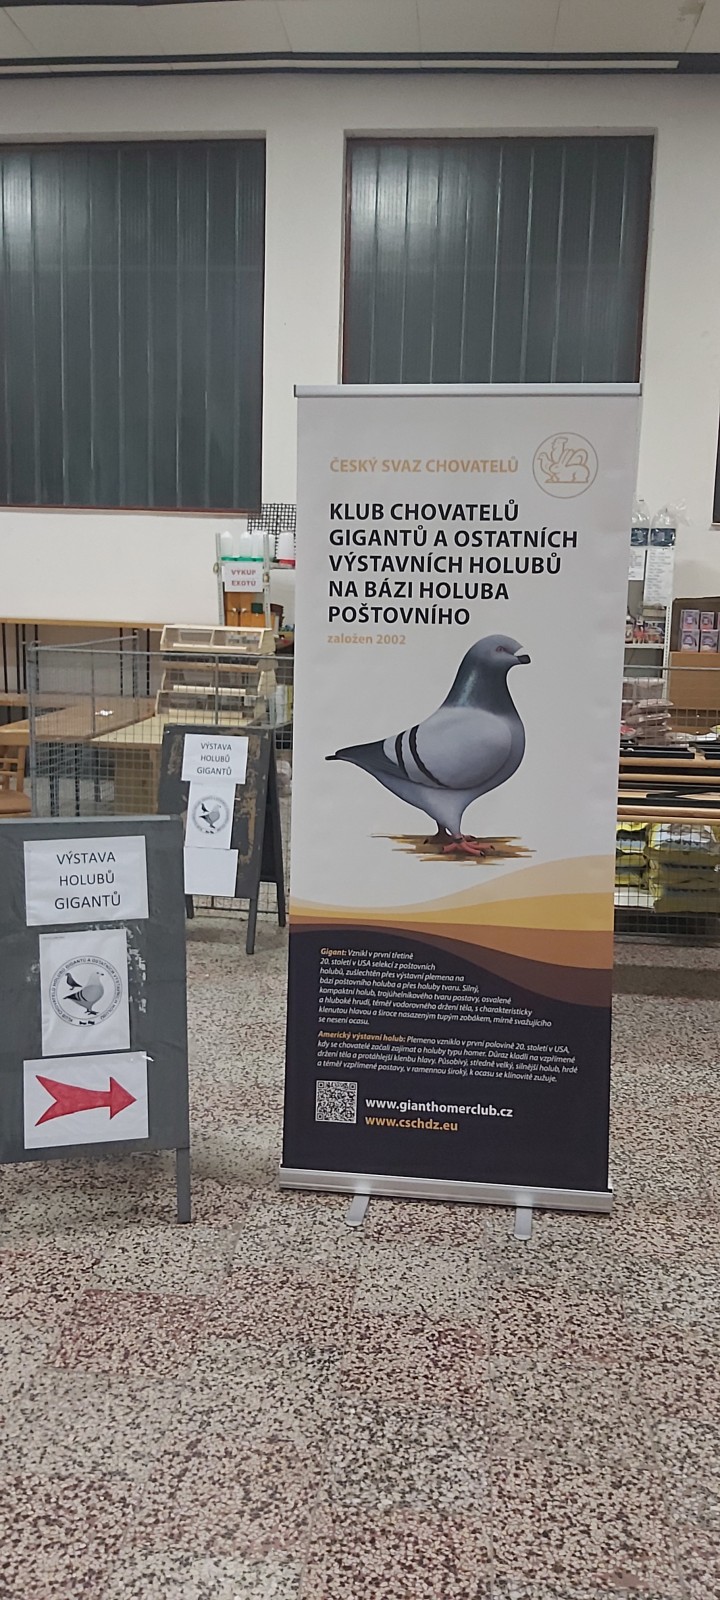 Speciální výstava holubů Gigant